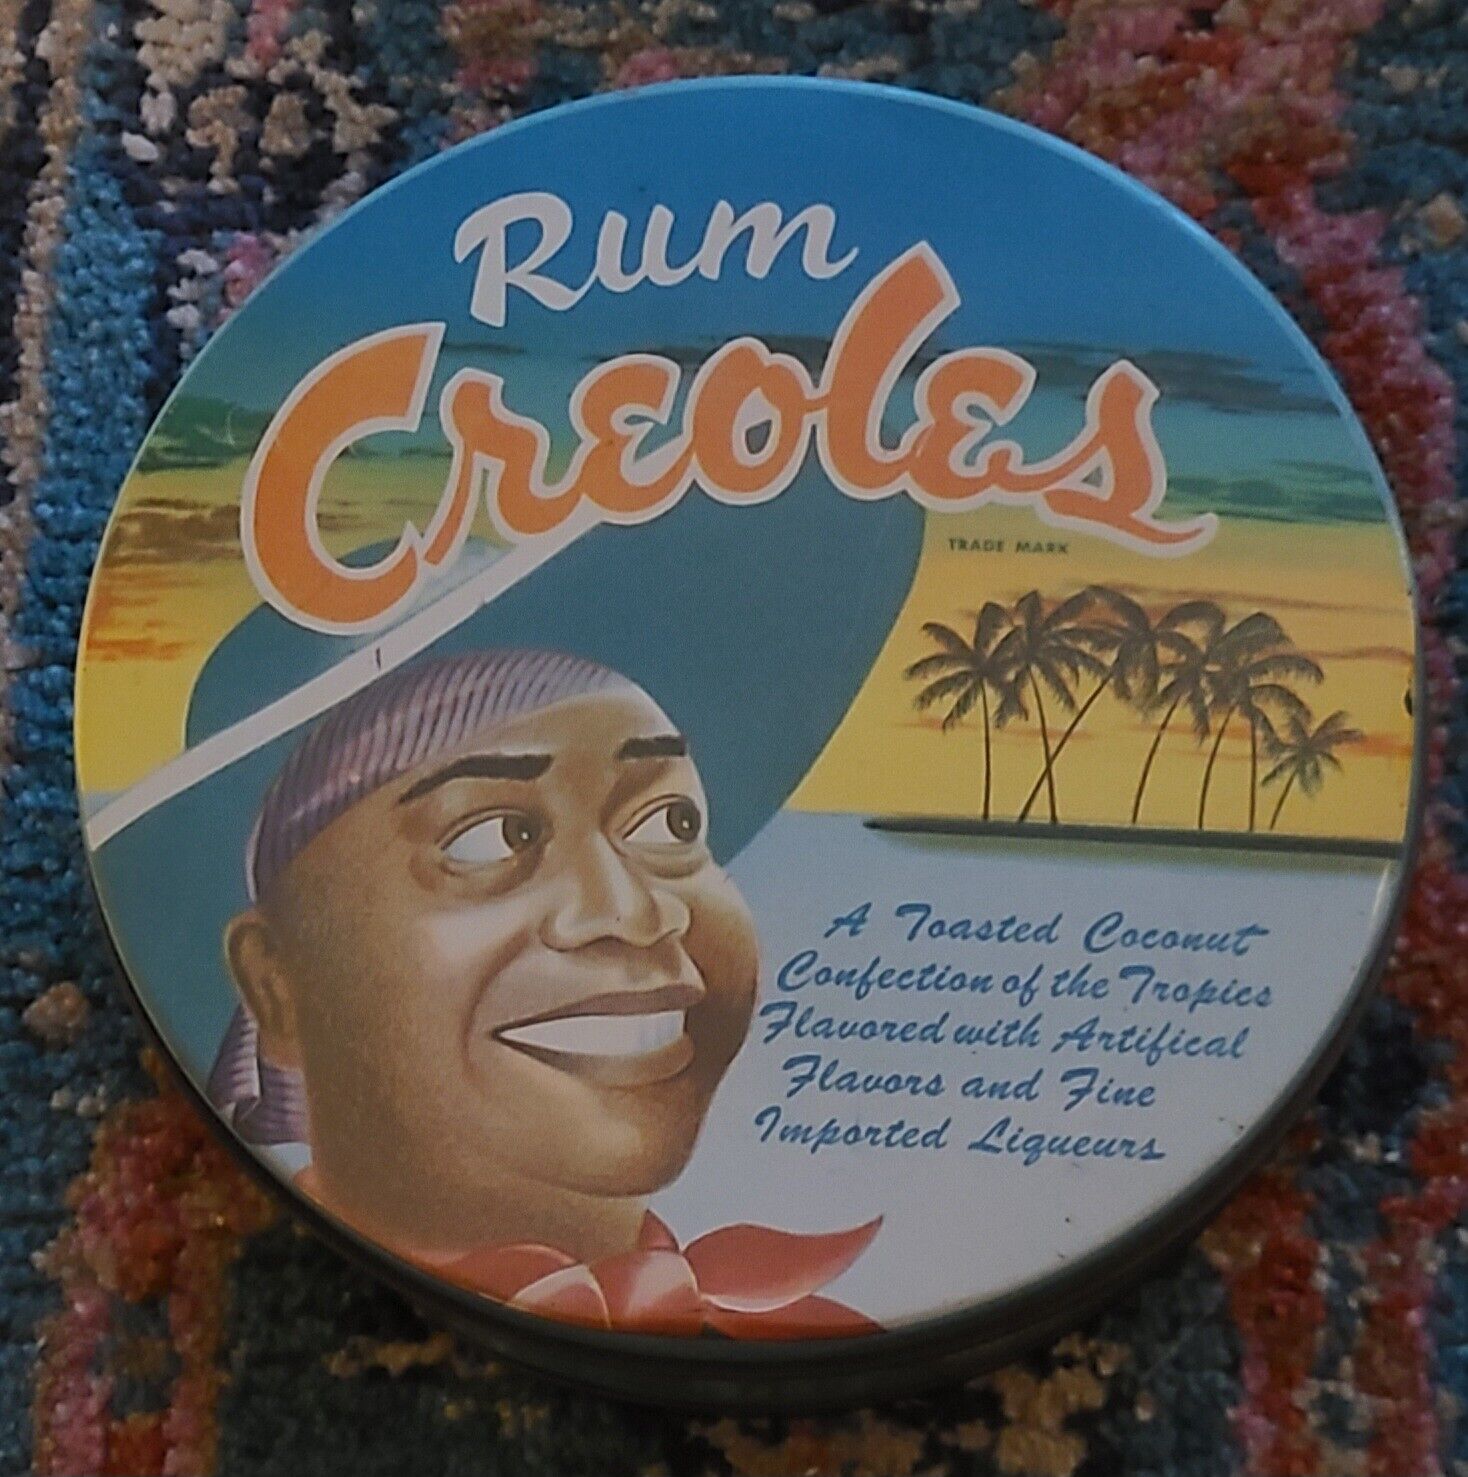 VTG Rum Creoles Coconut Confection of the Tropics Bright Colors  l/2 lb Tin Can